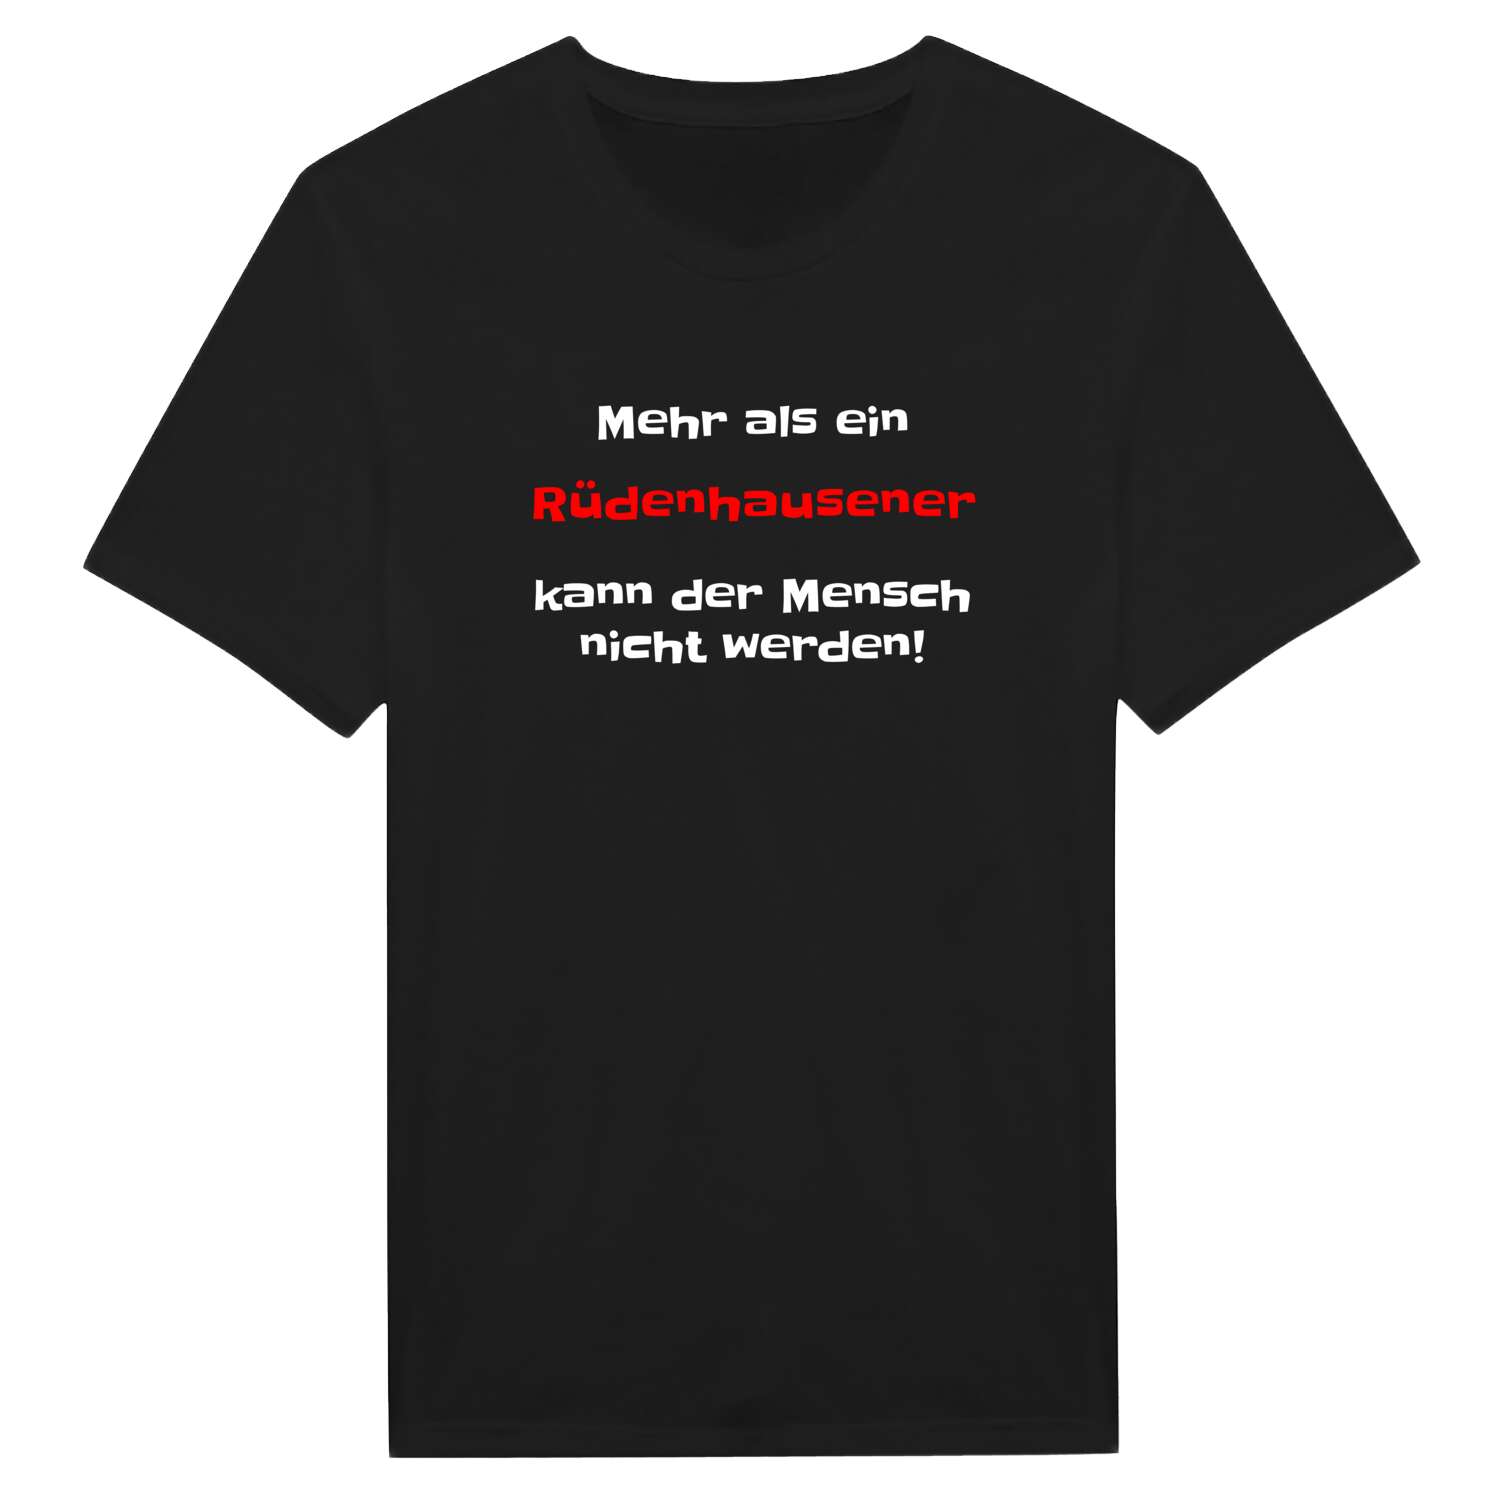 Rüdenhausen T-Shirt »Mehr als ein«